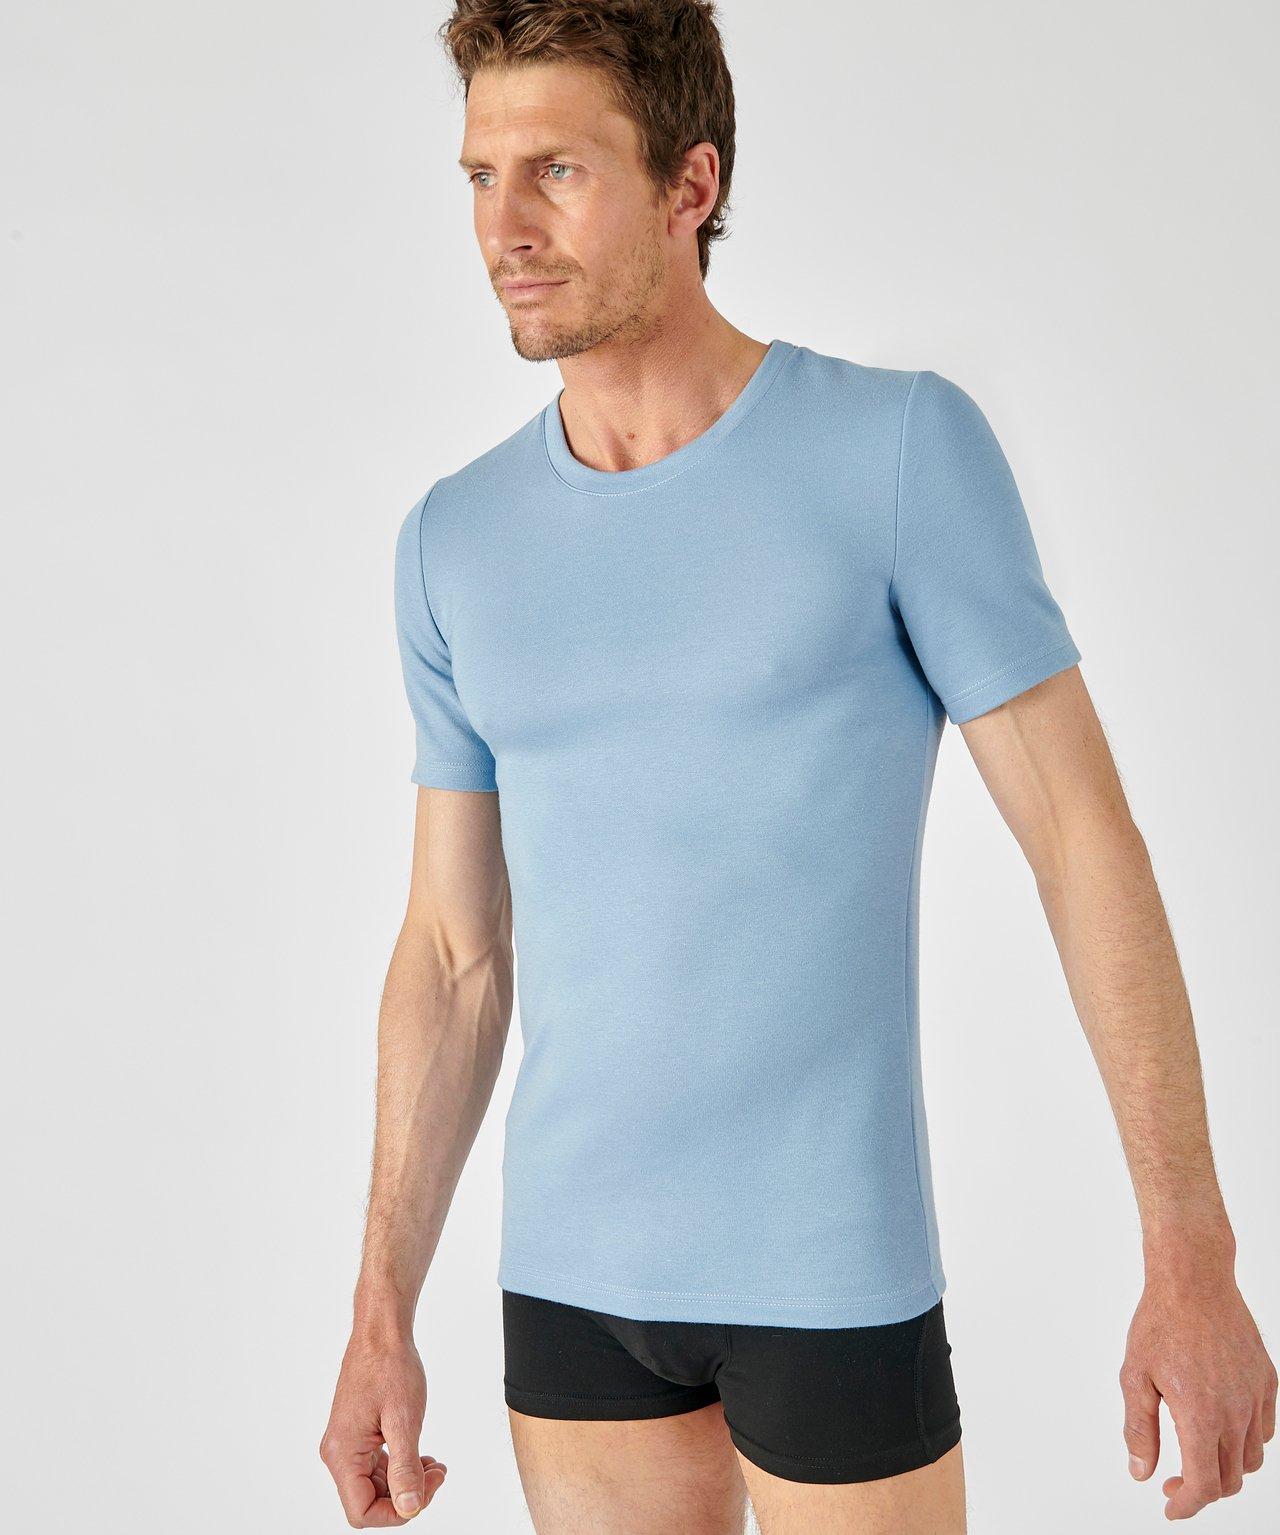 Damart  T-Shirt, Wärmegrad Medium 3. 